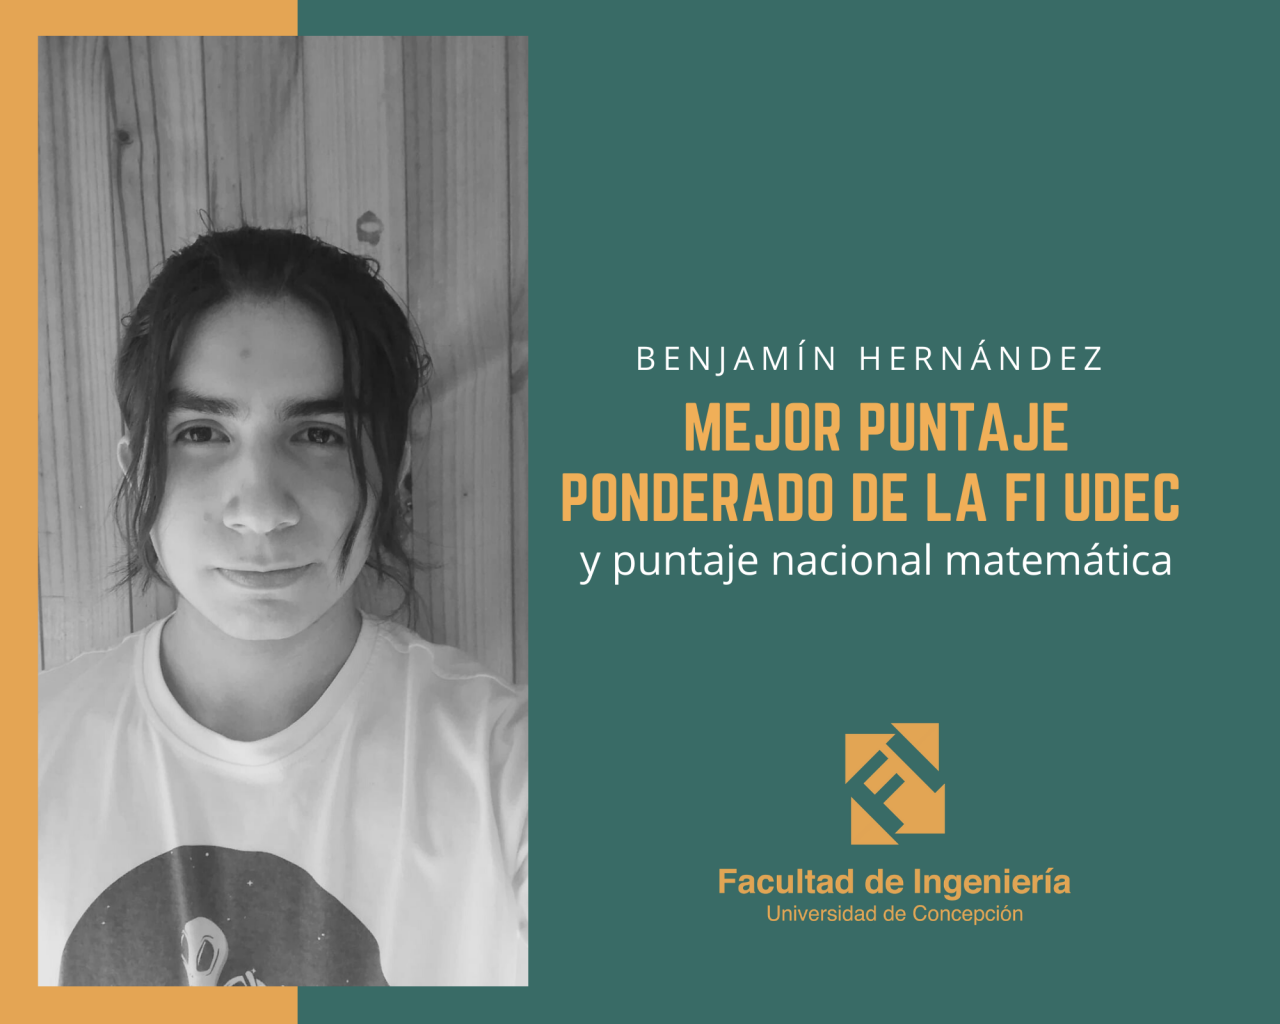 Entrevista a Benjamín Hernández de Ingeniería Civil